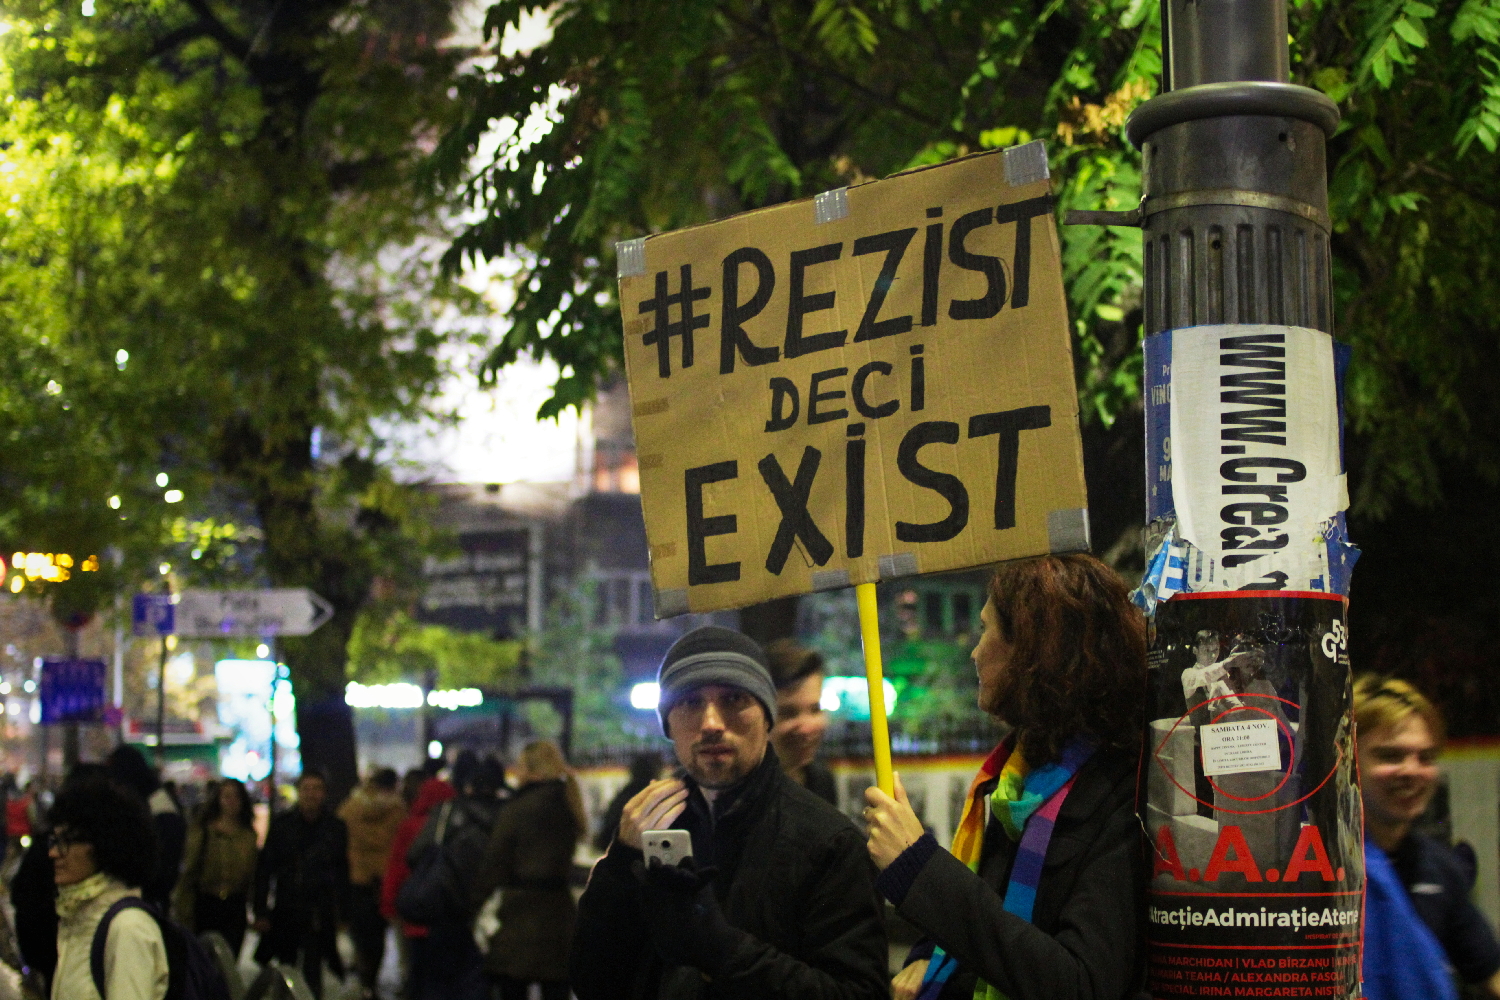 Les manifestations sont fréquentes à Bucarest. Ici, en novembre 2018 : « Résister c’est exister ».